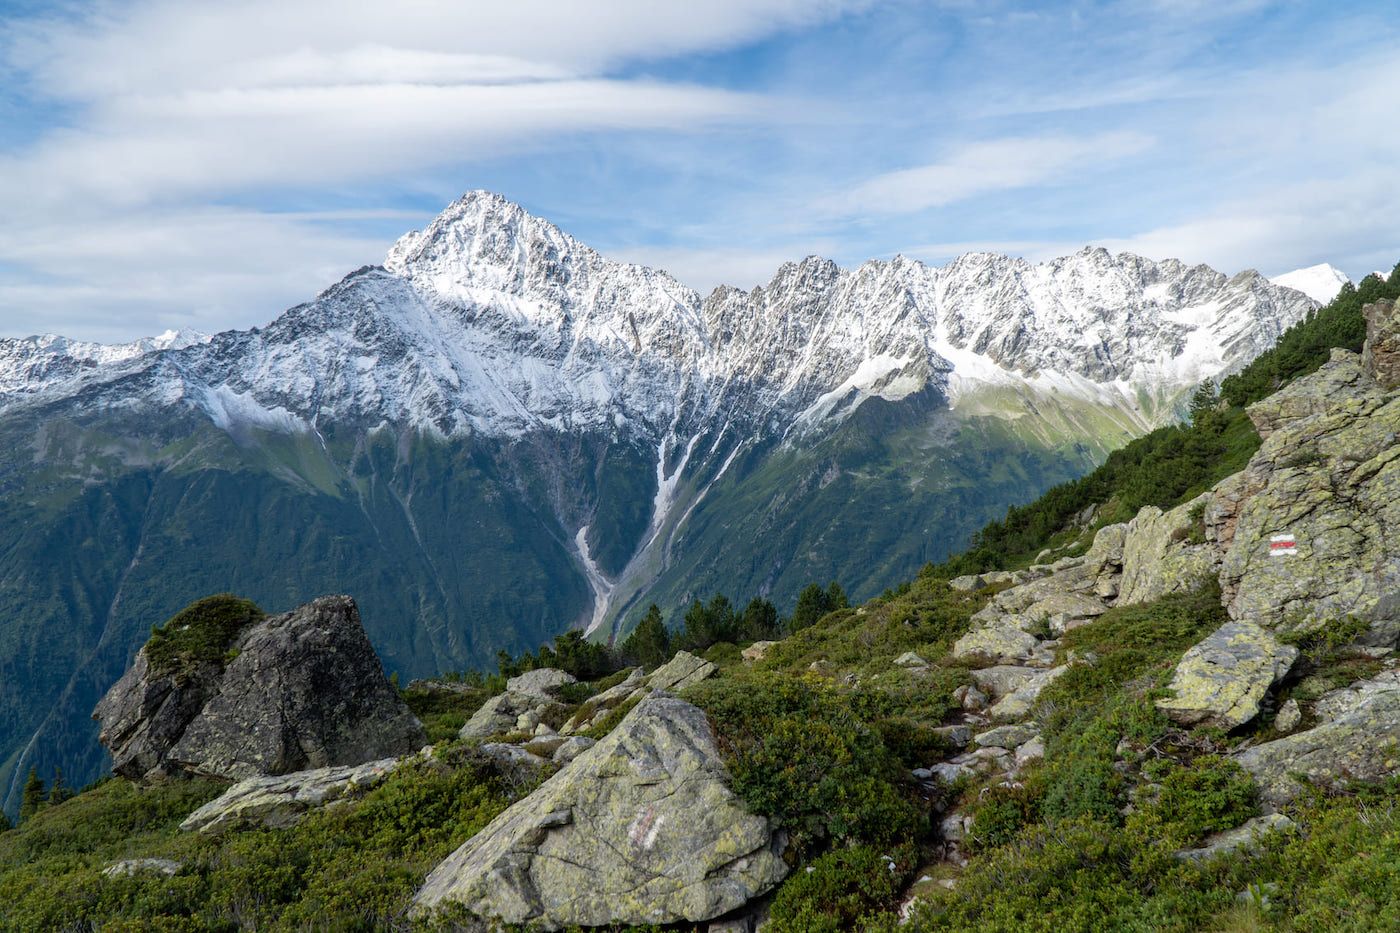 Paysage de montagne enneigée avec arolière au premier plan, Alpes suisses